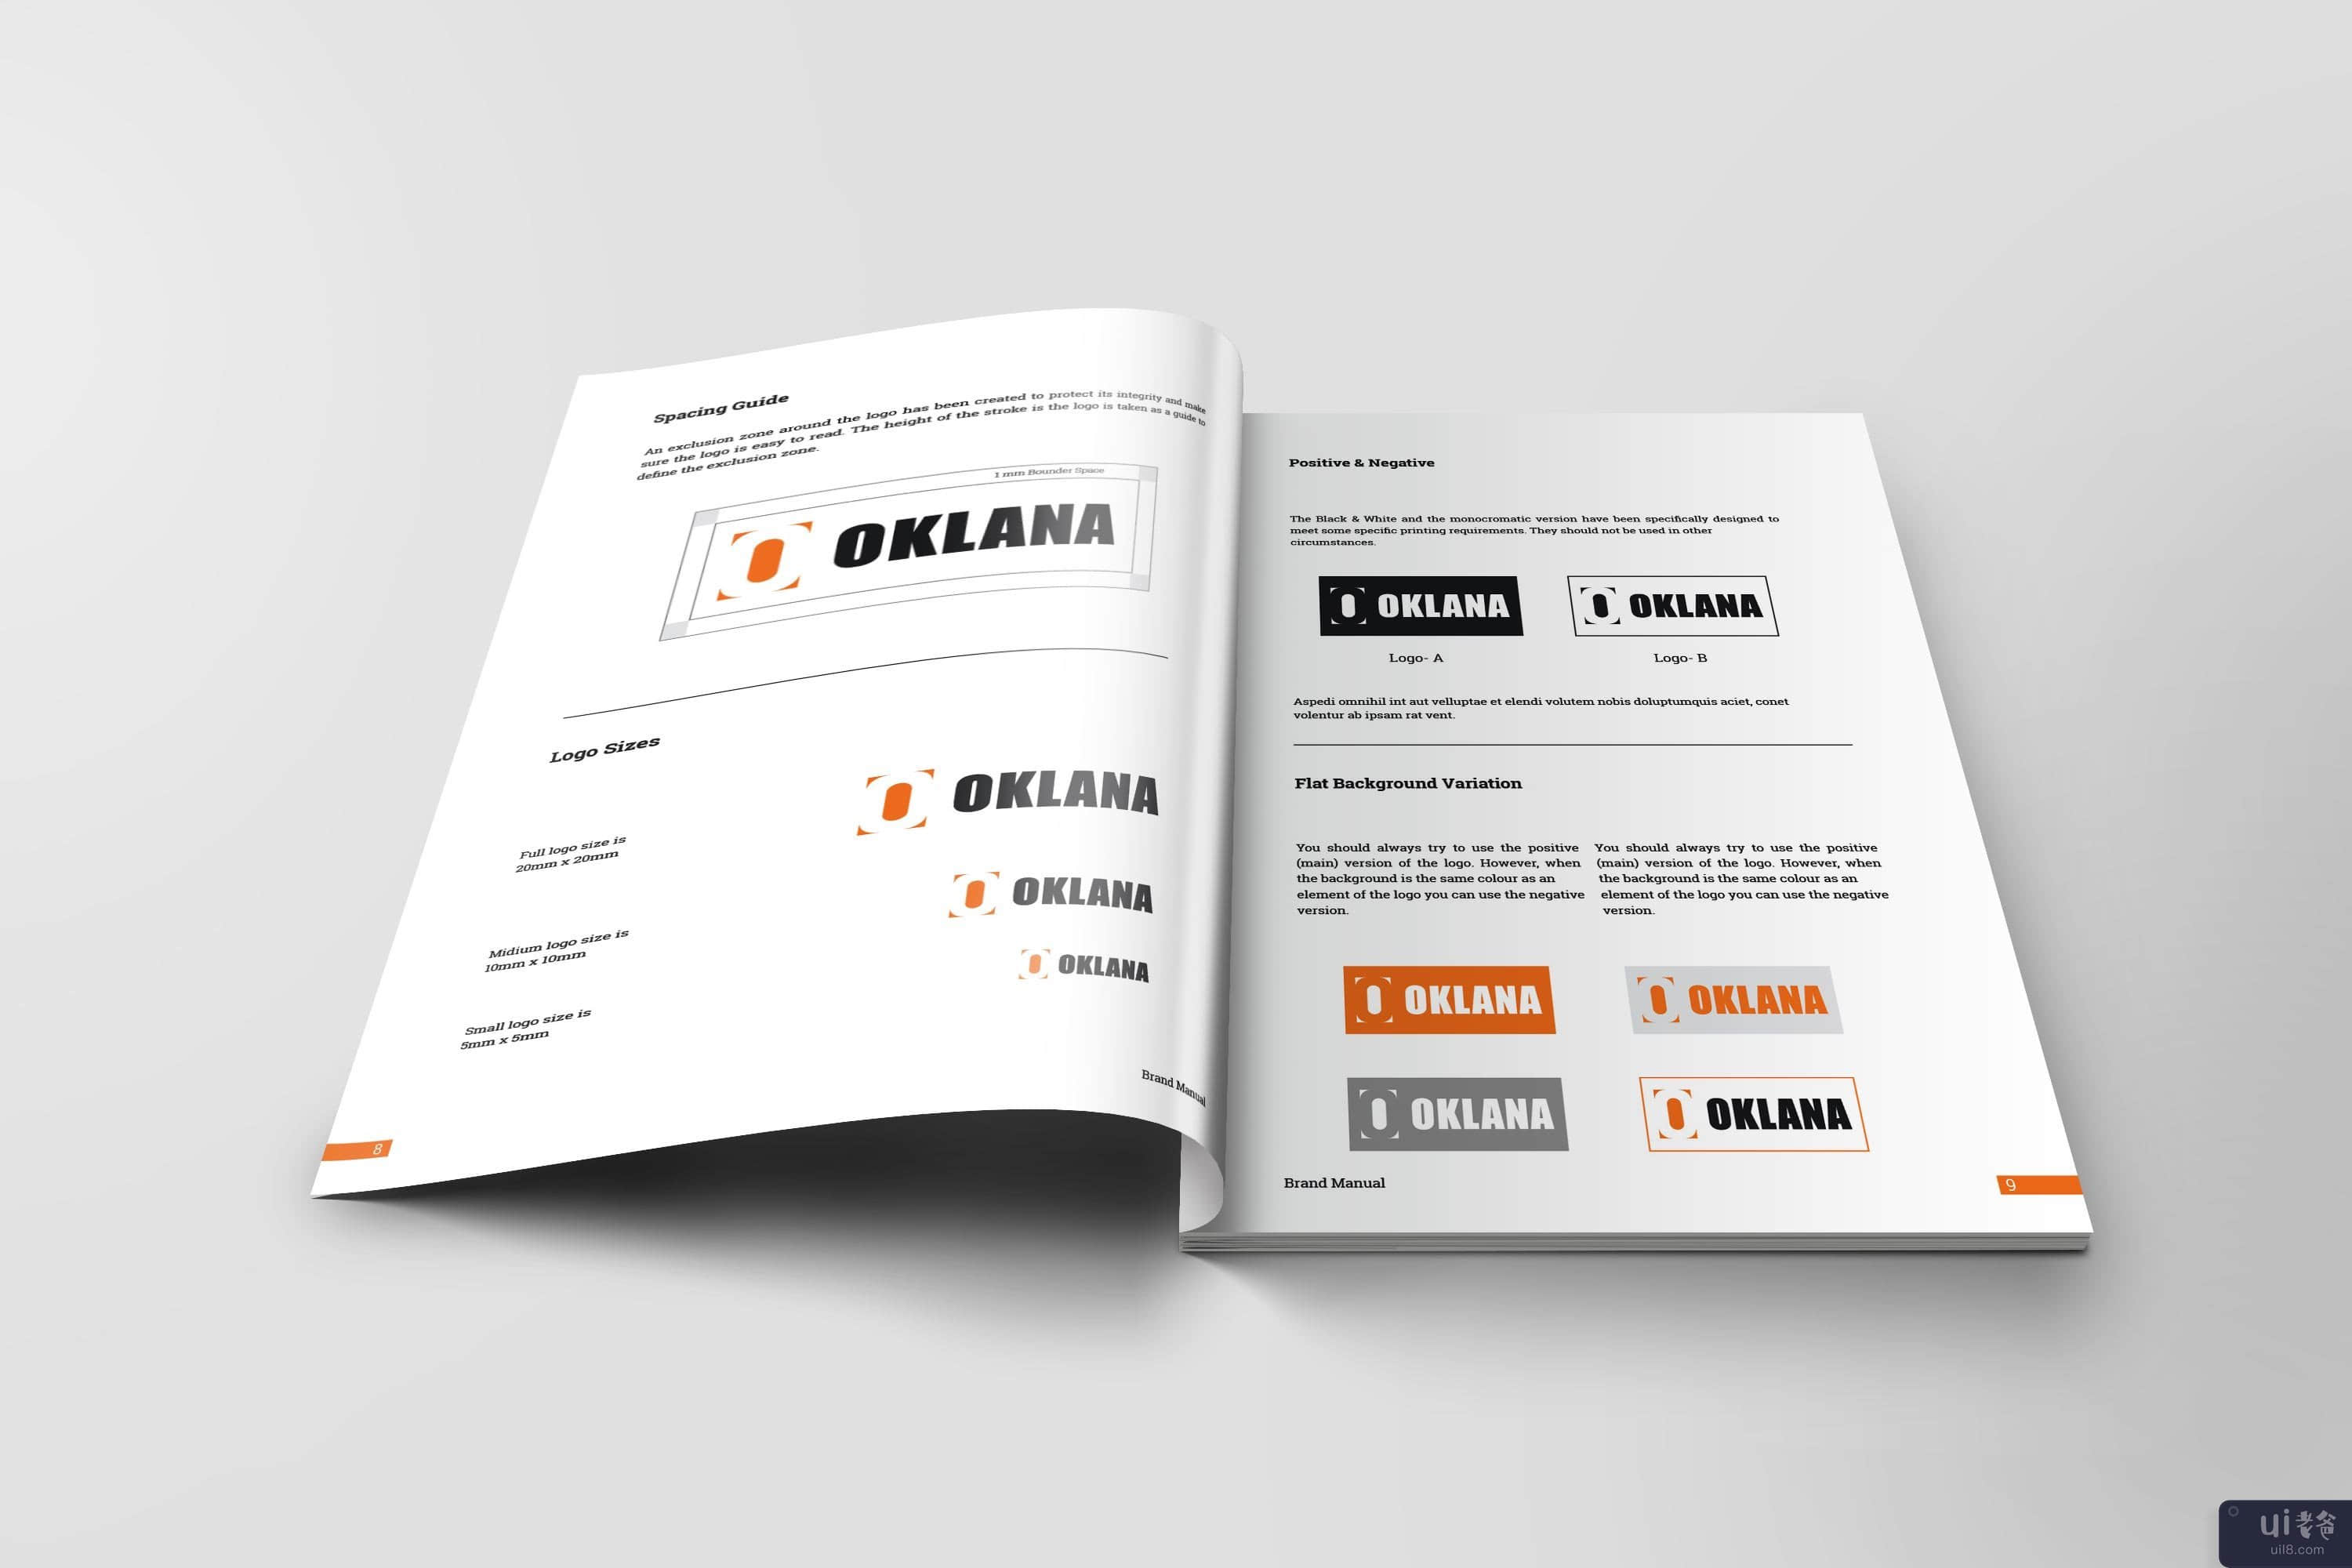 品牌手册指南 | InDesign 模板(Brand Manual Guideline | InDesign Template)插图6